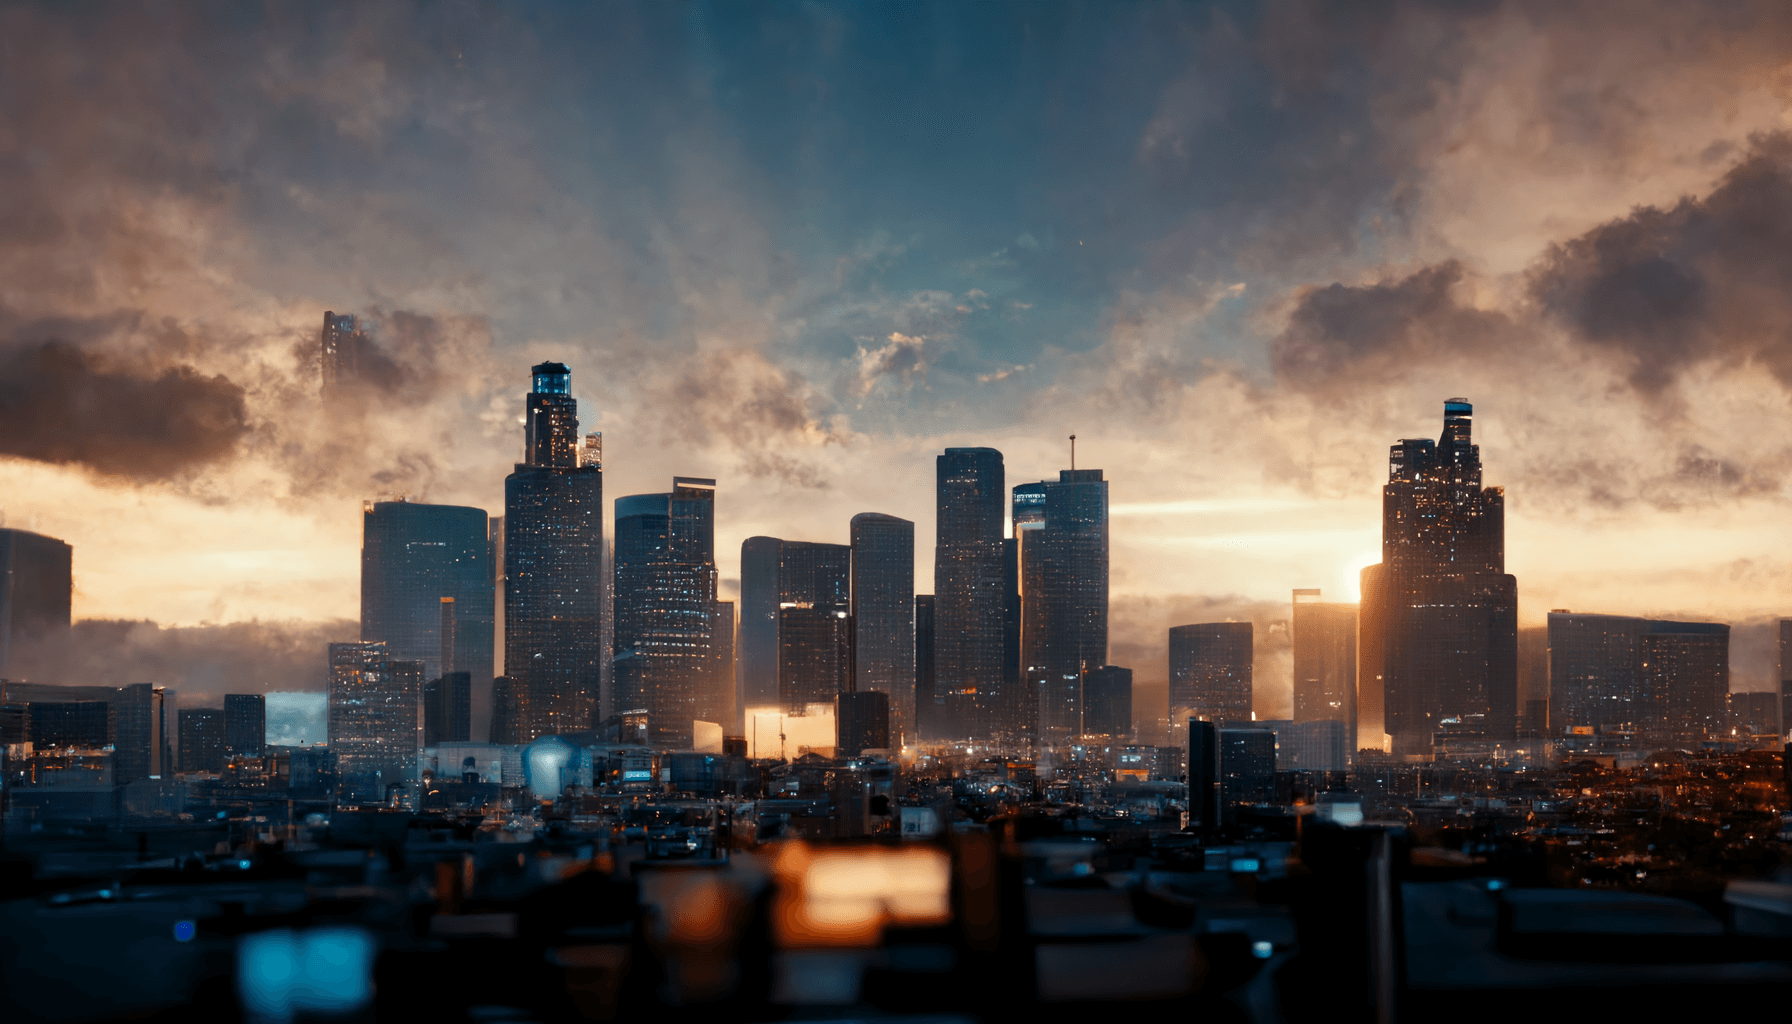 "Los Angeles Skyline"